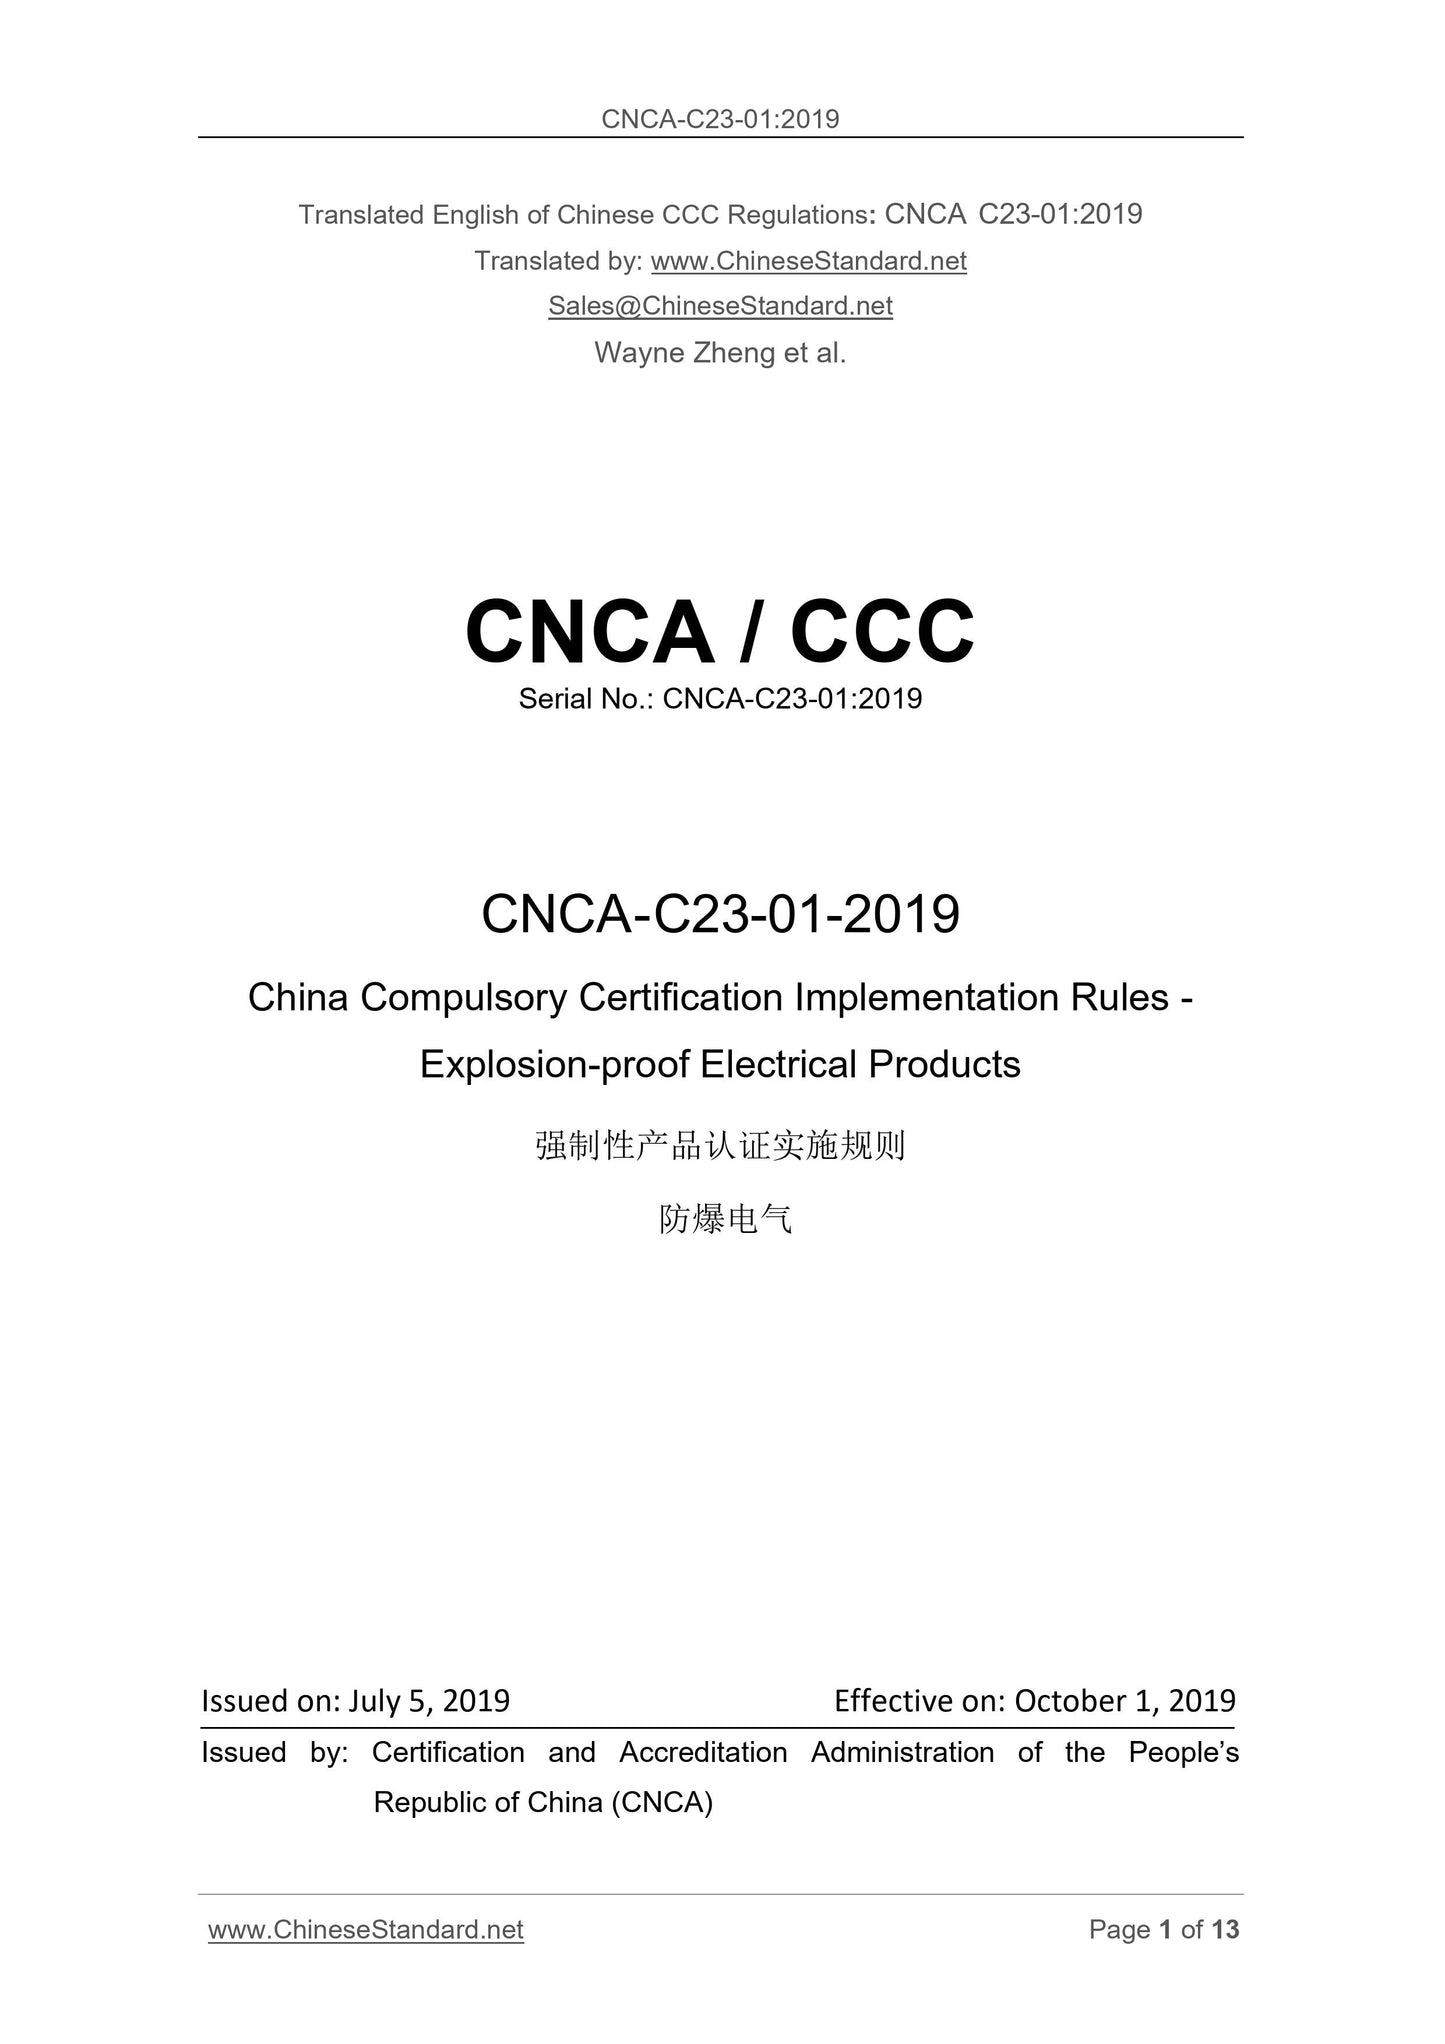 CNCA C23-01-2019 Page 1